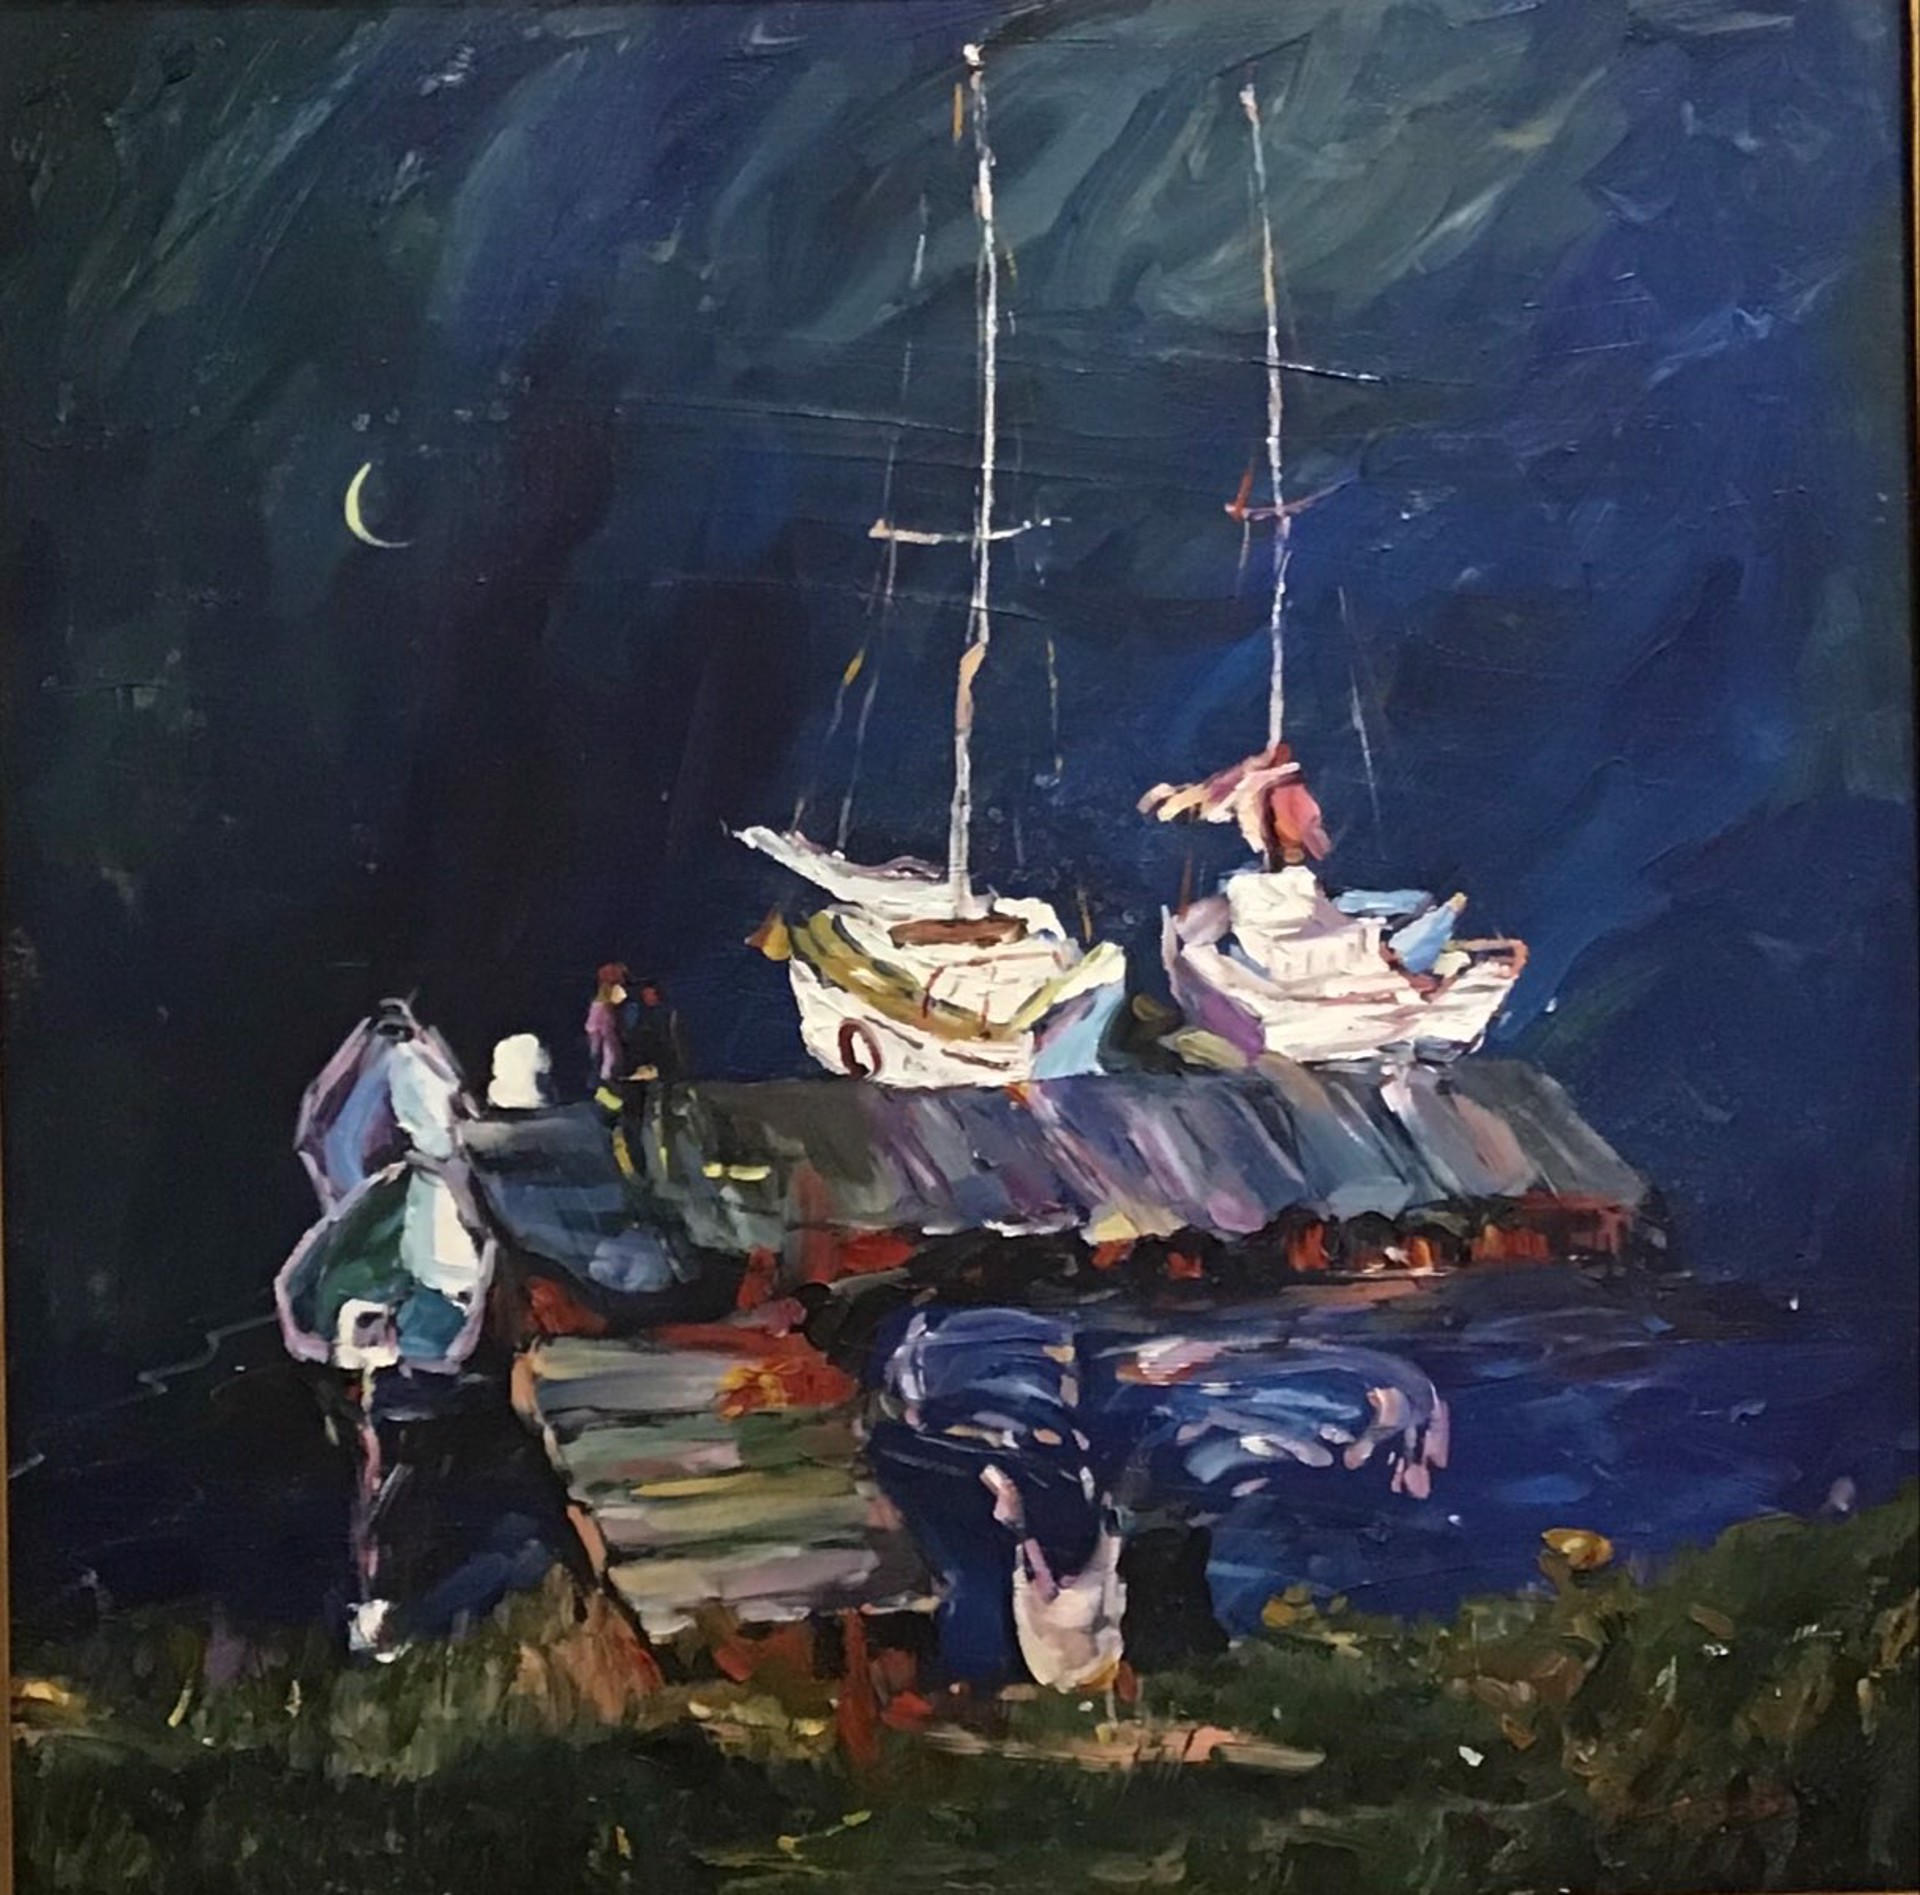 Midsummers Night Dream by Yuan Rong Zhou